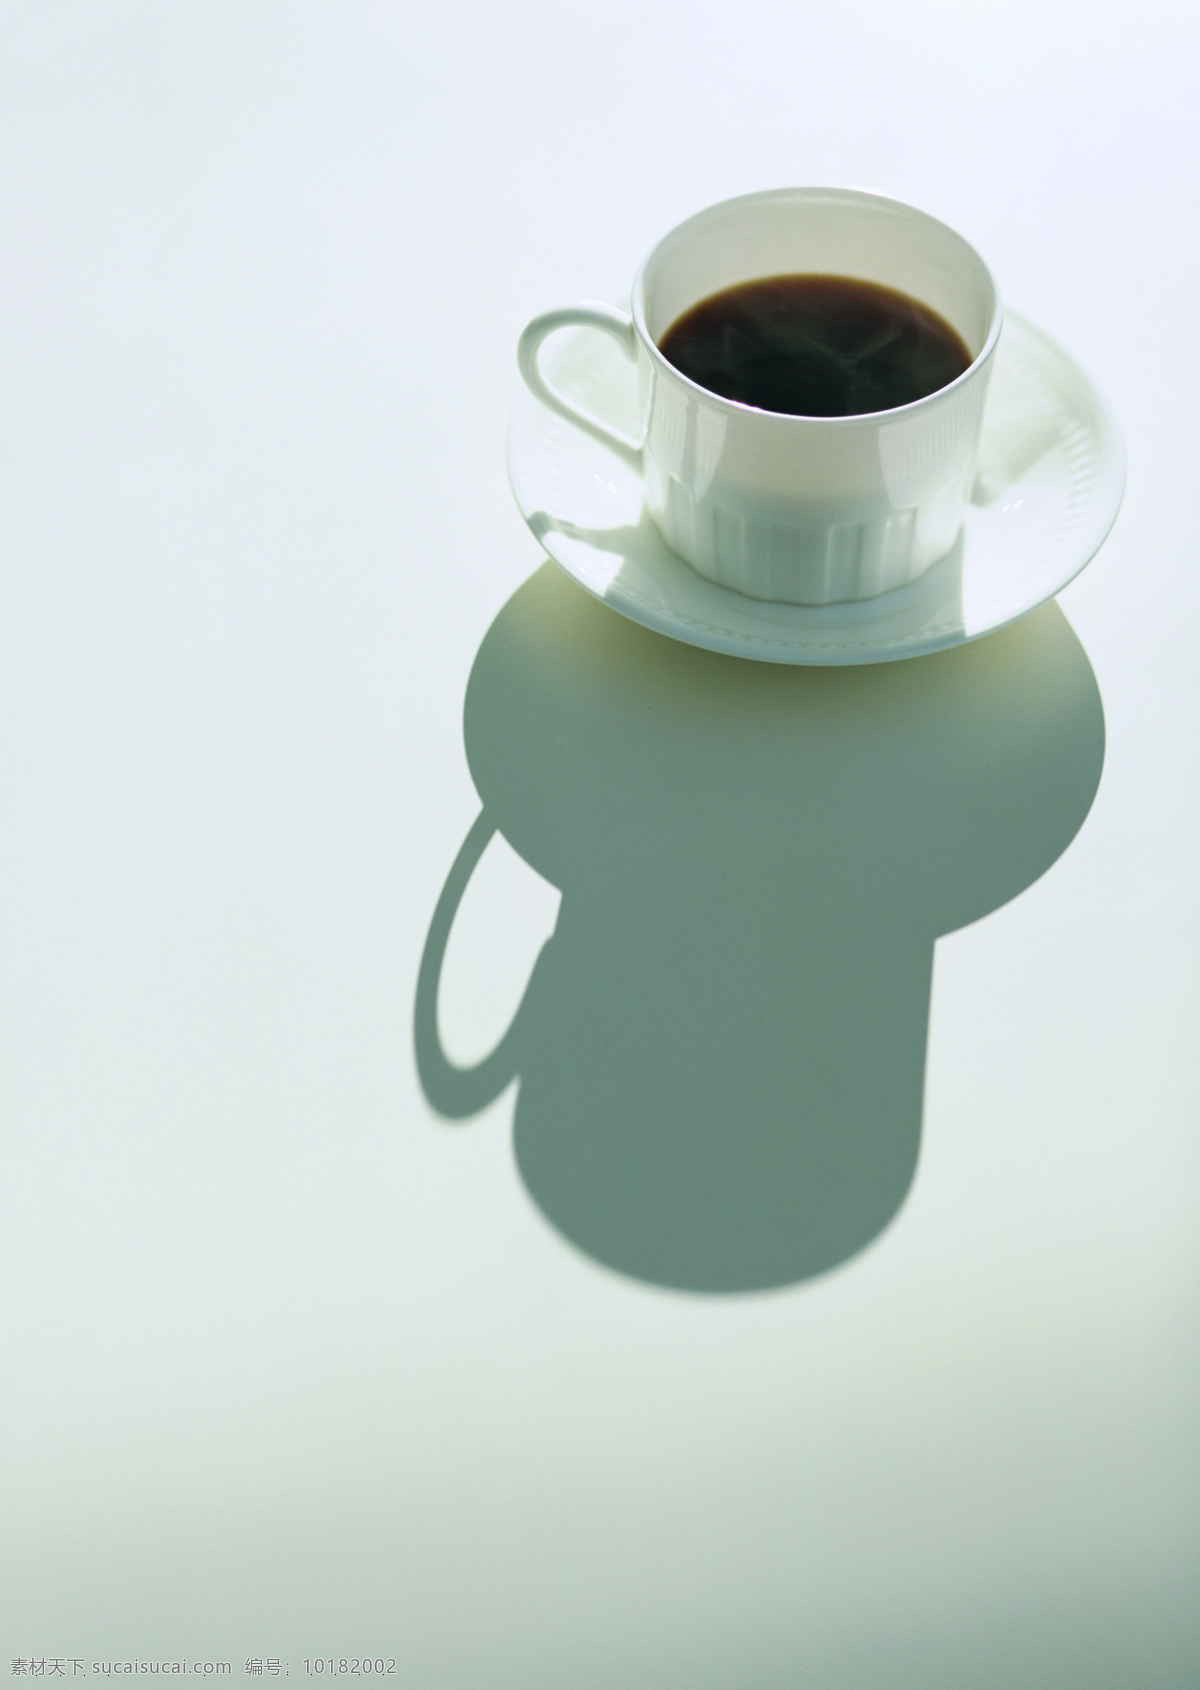 咖啡杯 倒影 白色 白色背景 杯 咖啡 影子 风景 生活 旅游餐饮